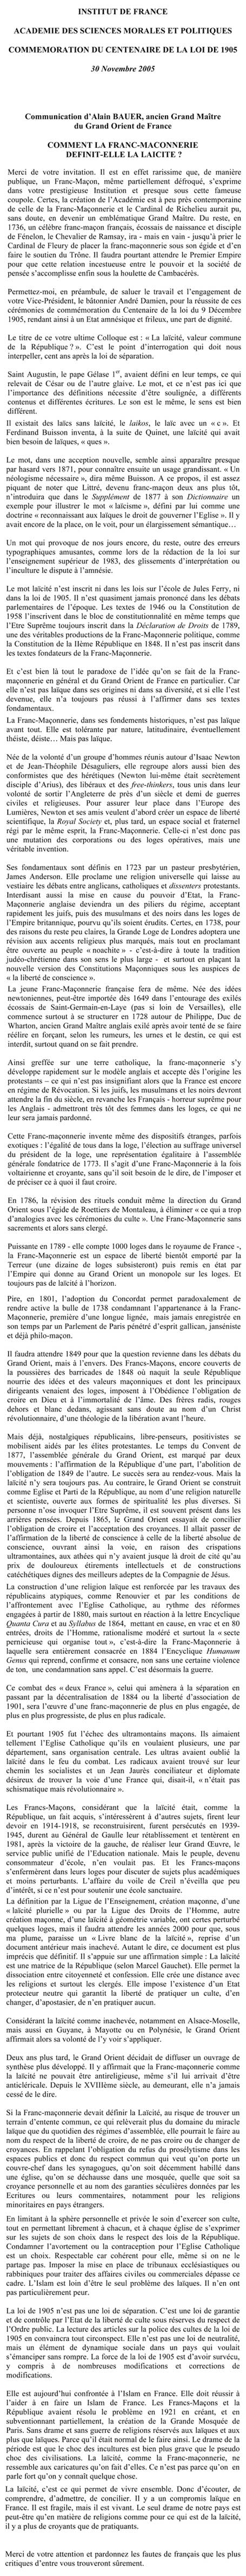 franc-maconnerie-laicite-30-11-2005